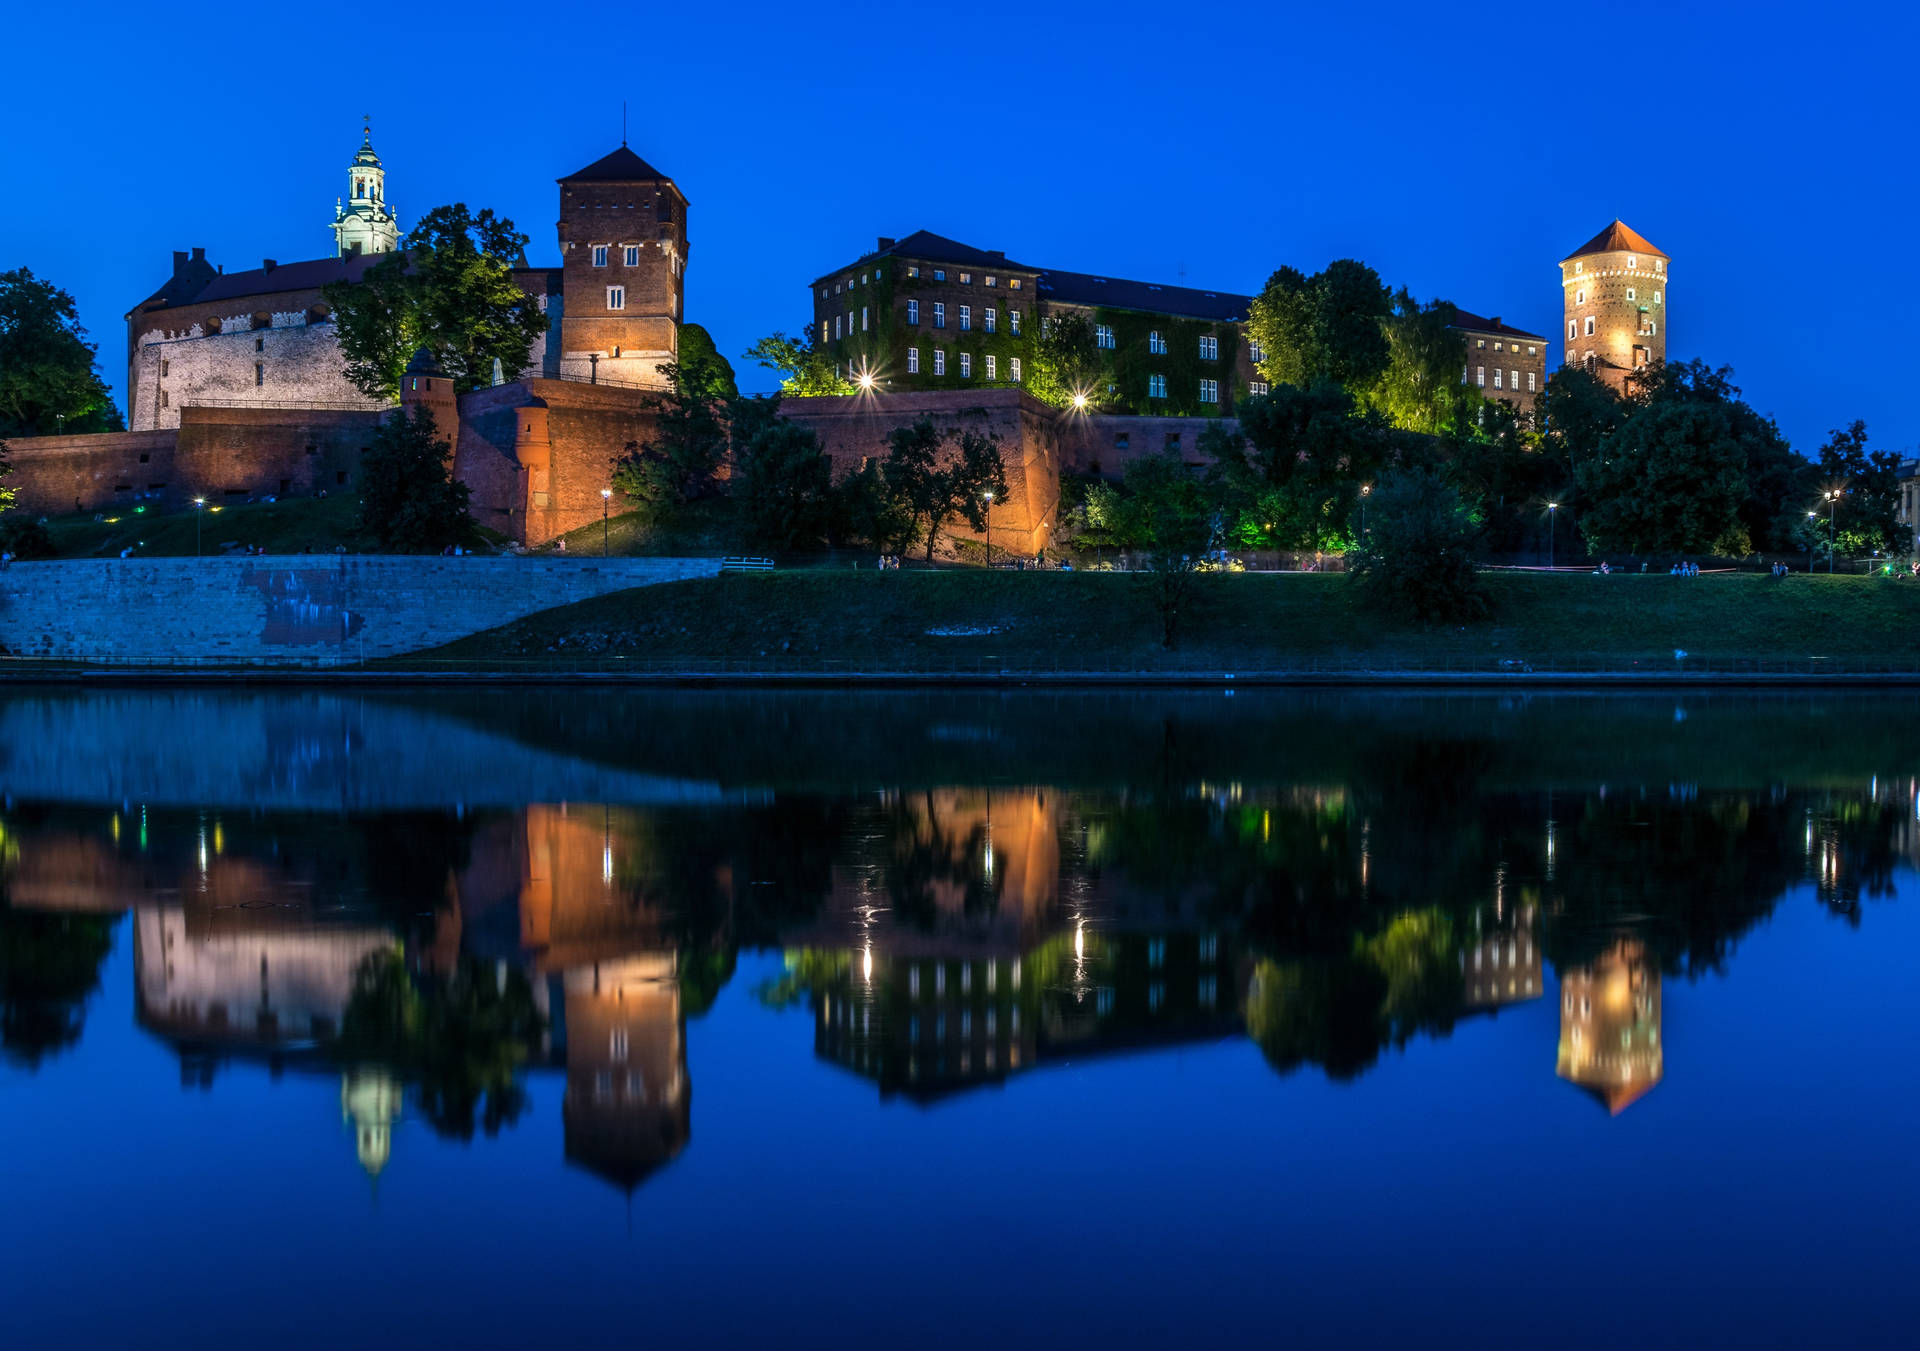 Vistula River In Krakow Poland At Night Wallpaper